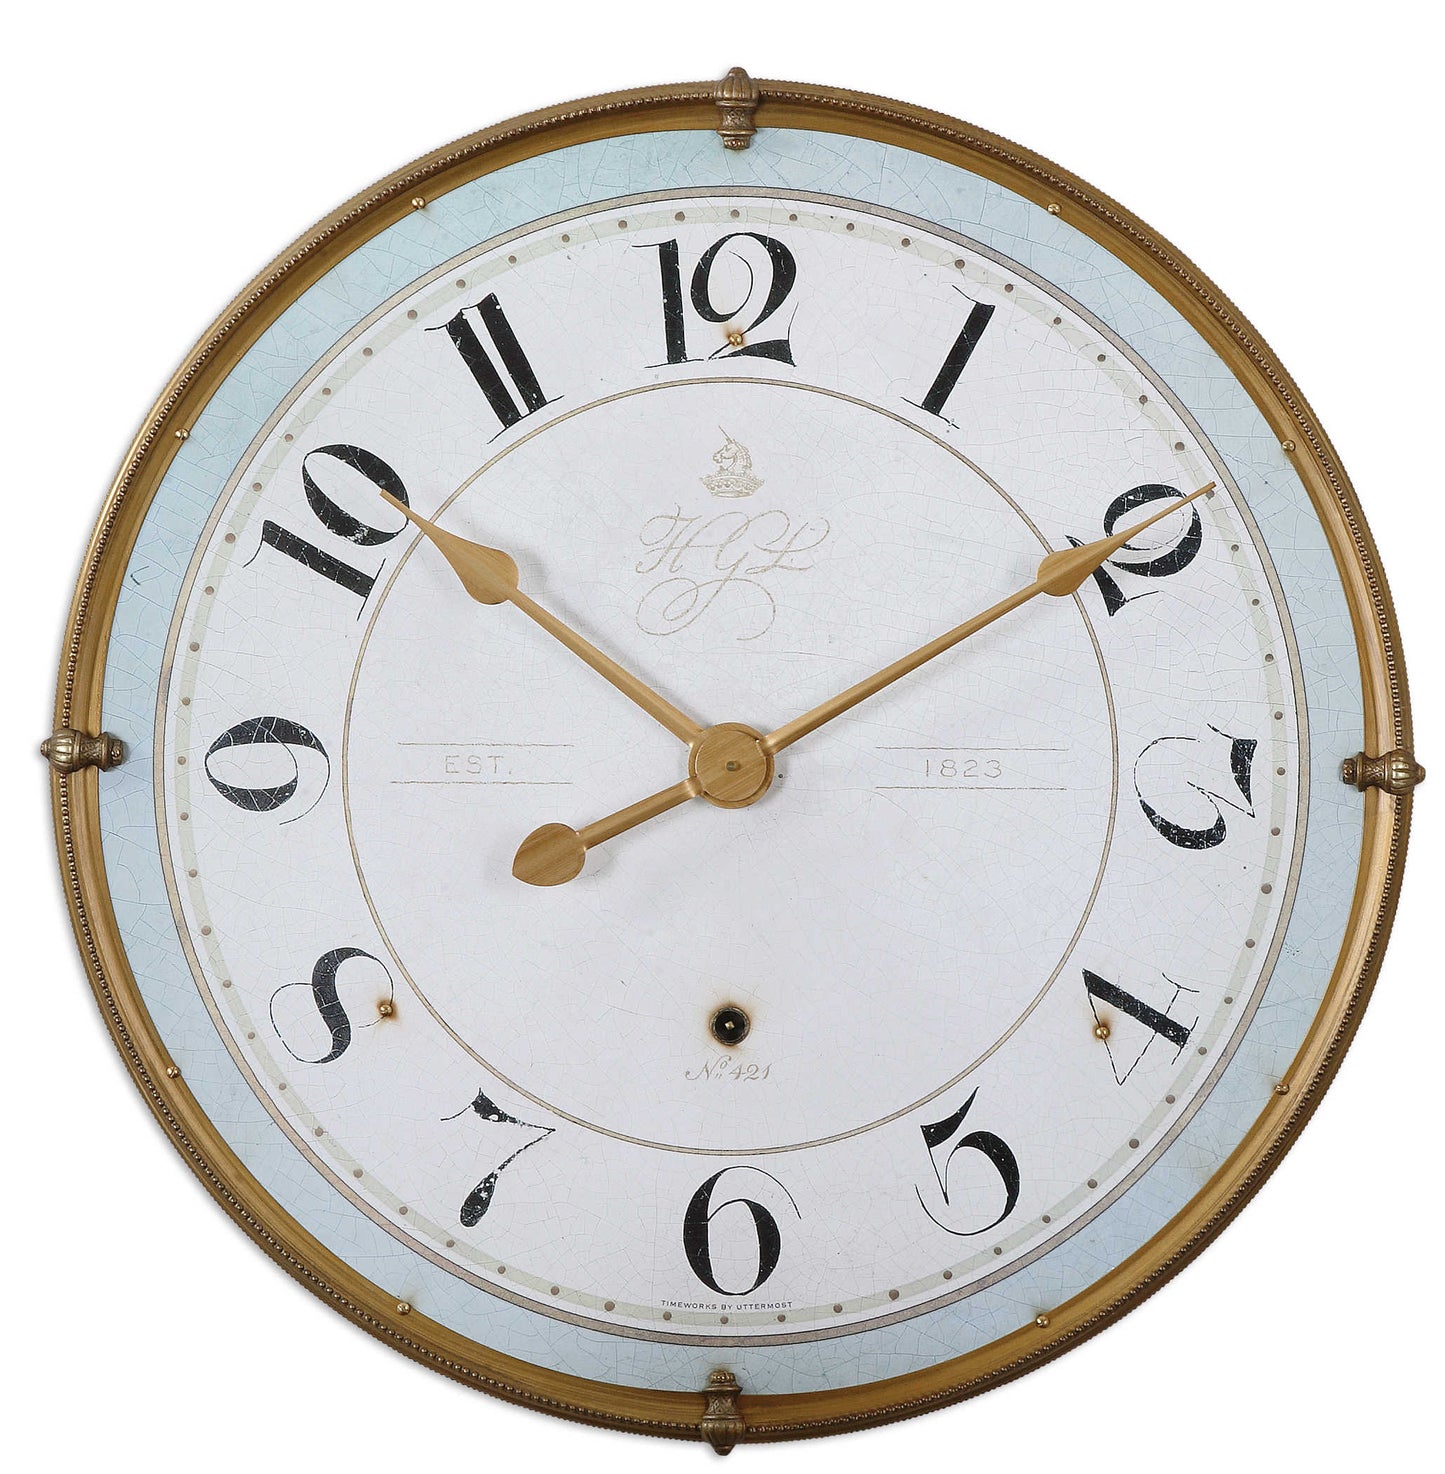 The Torriana Wall Clock